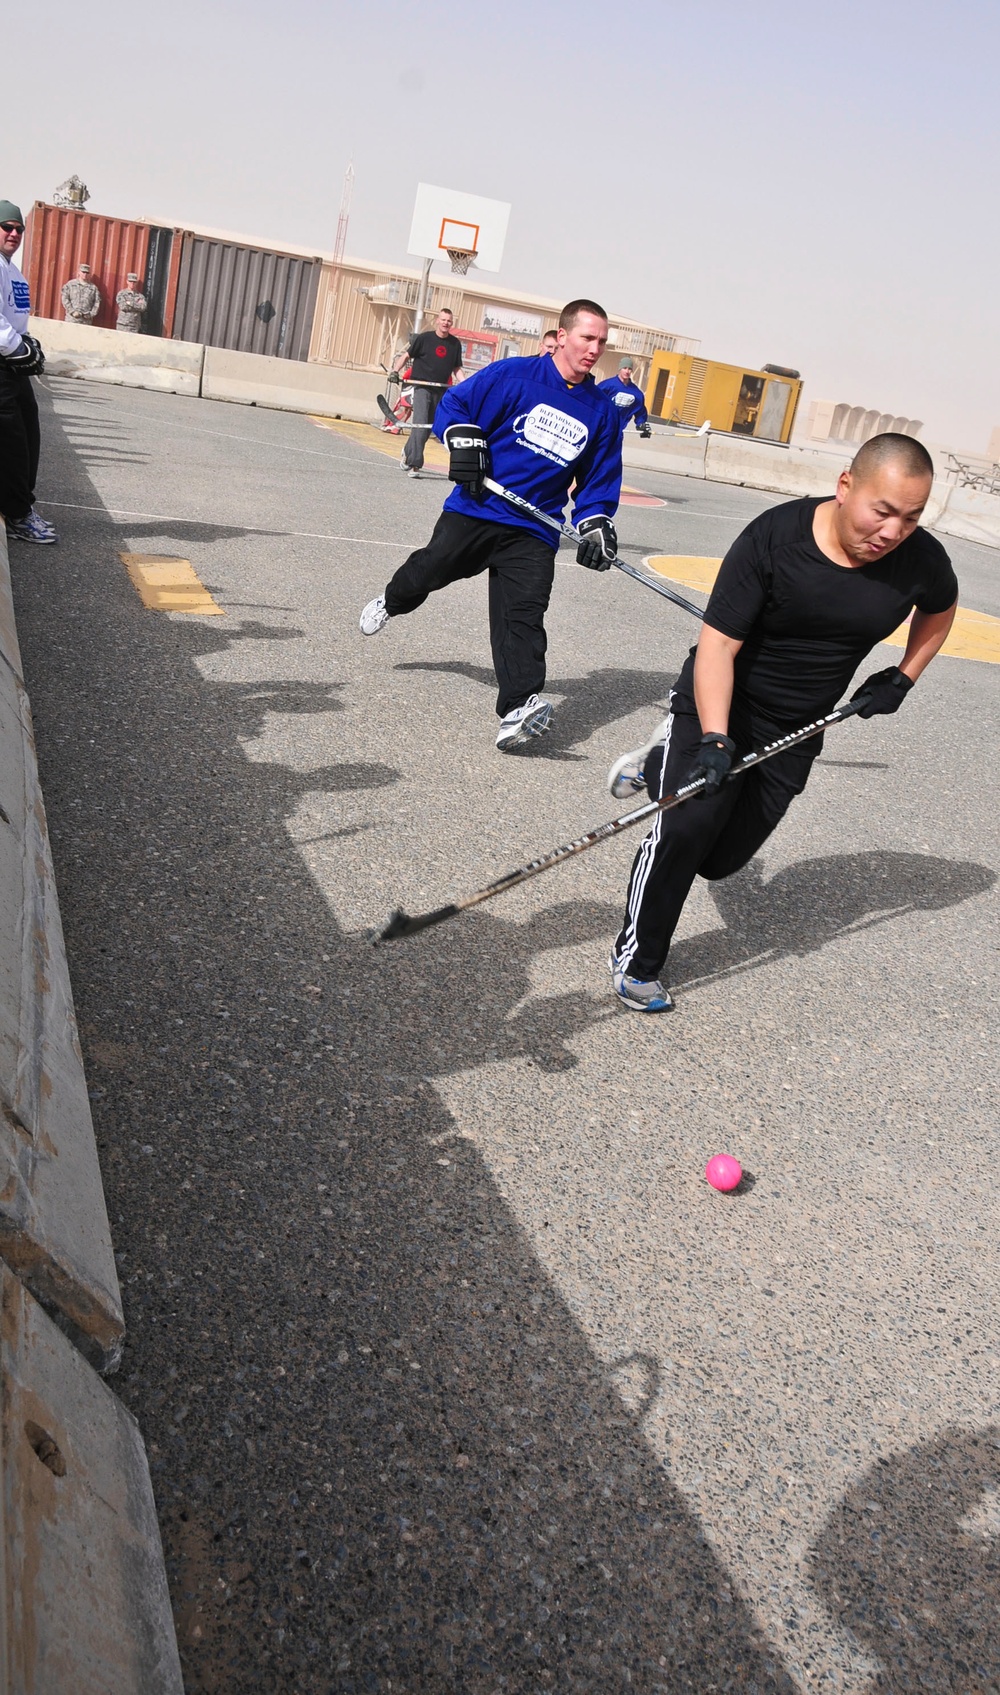 Hockey Day Minnesota 2012-Kuwait